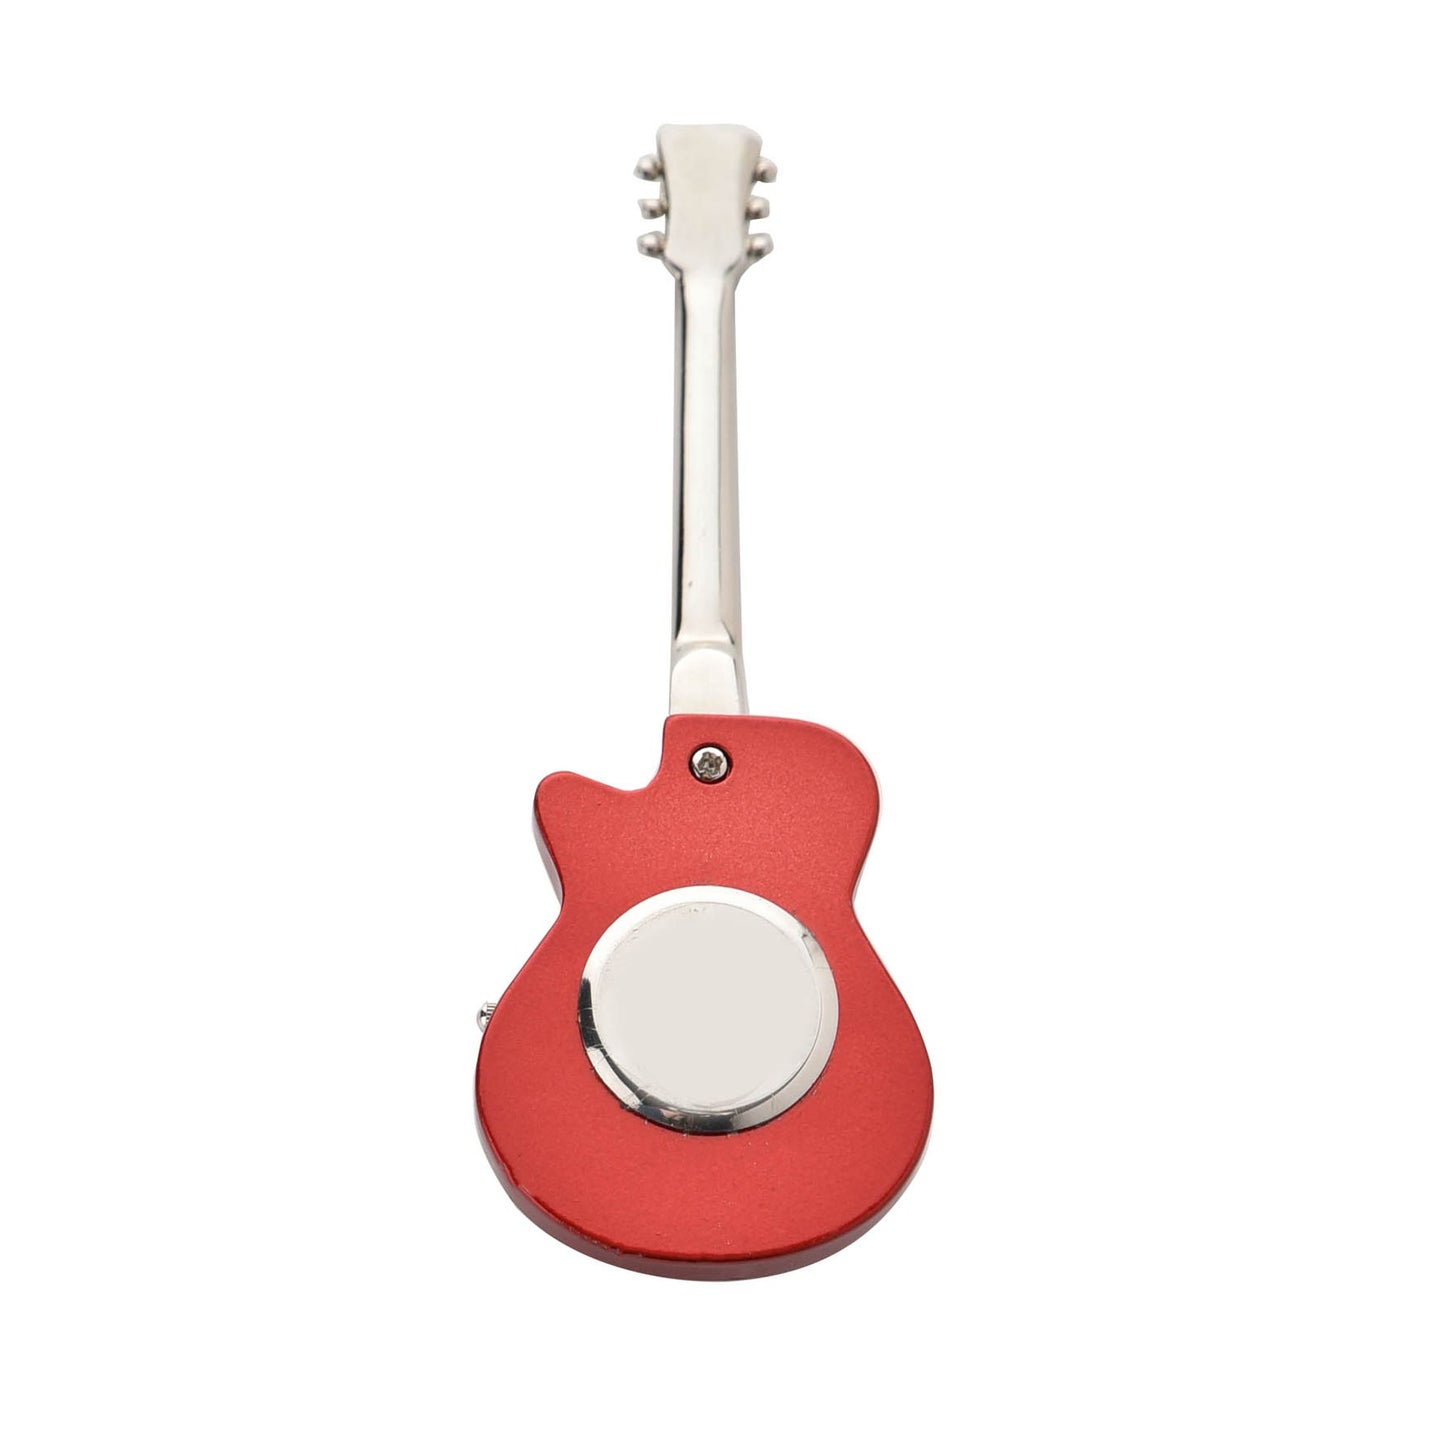 Miniature Red Guitar Clock